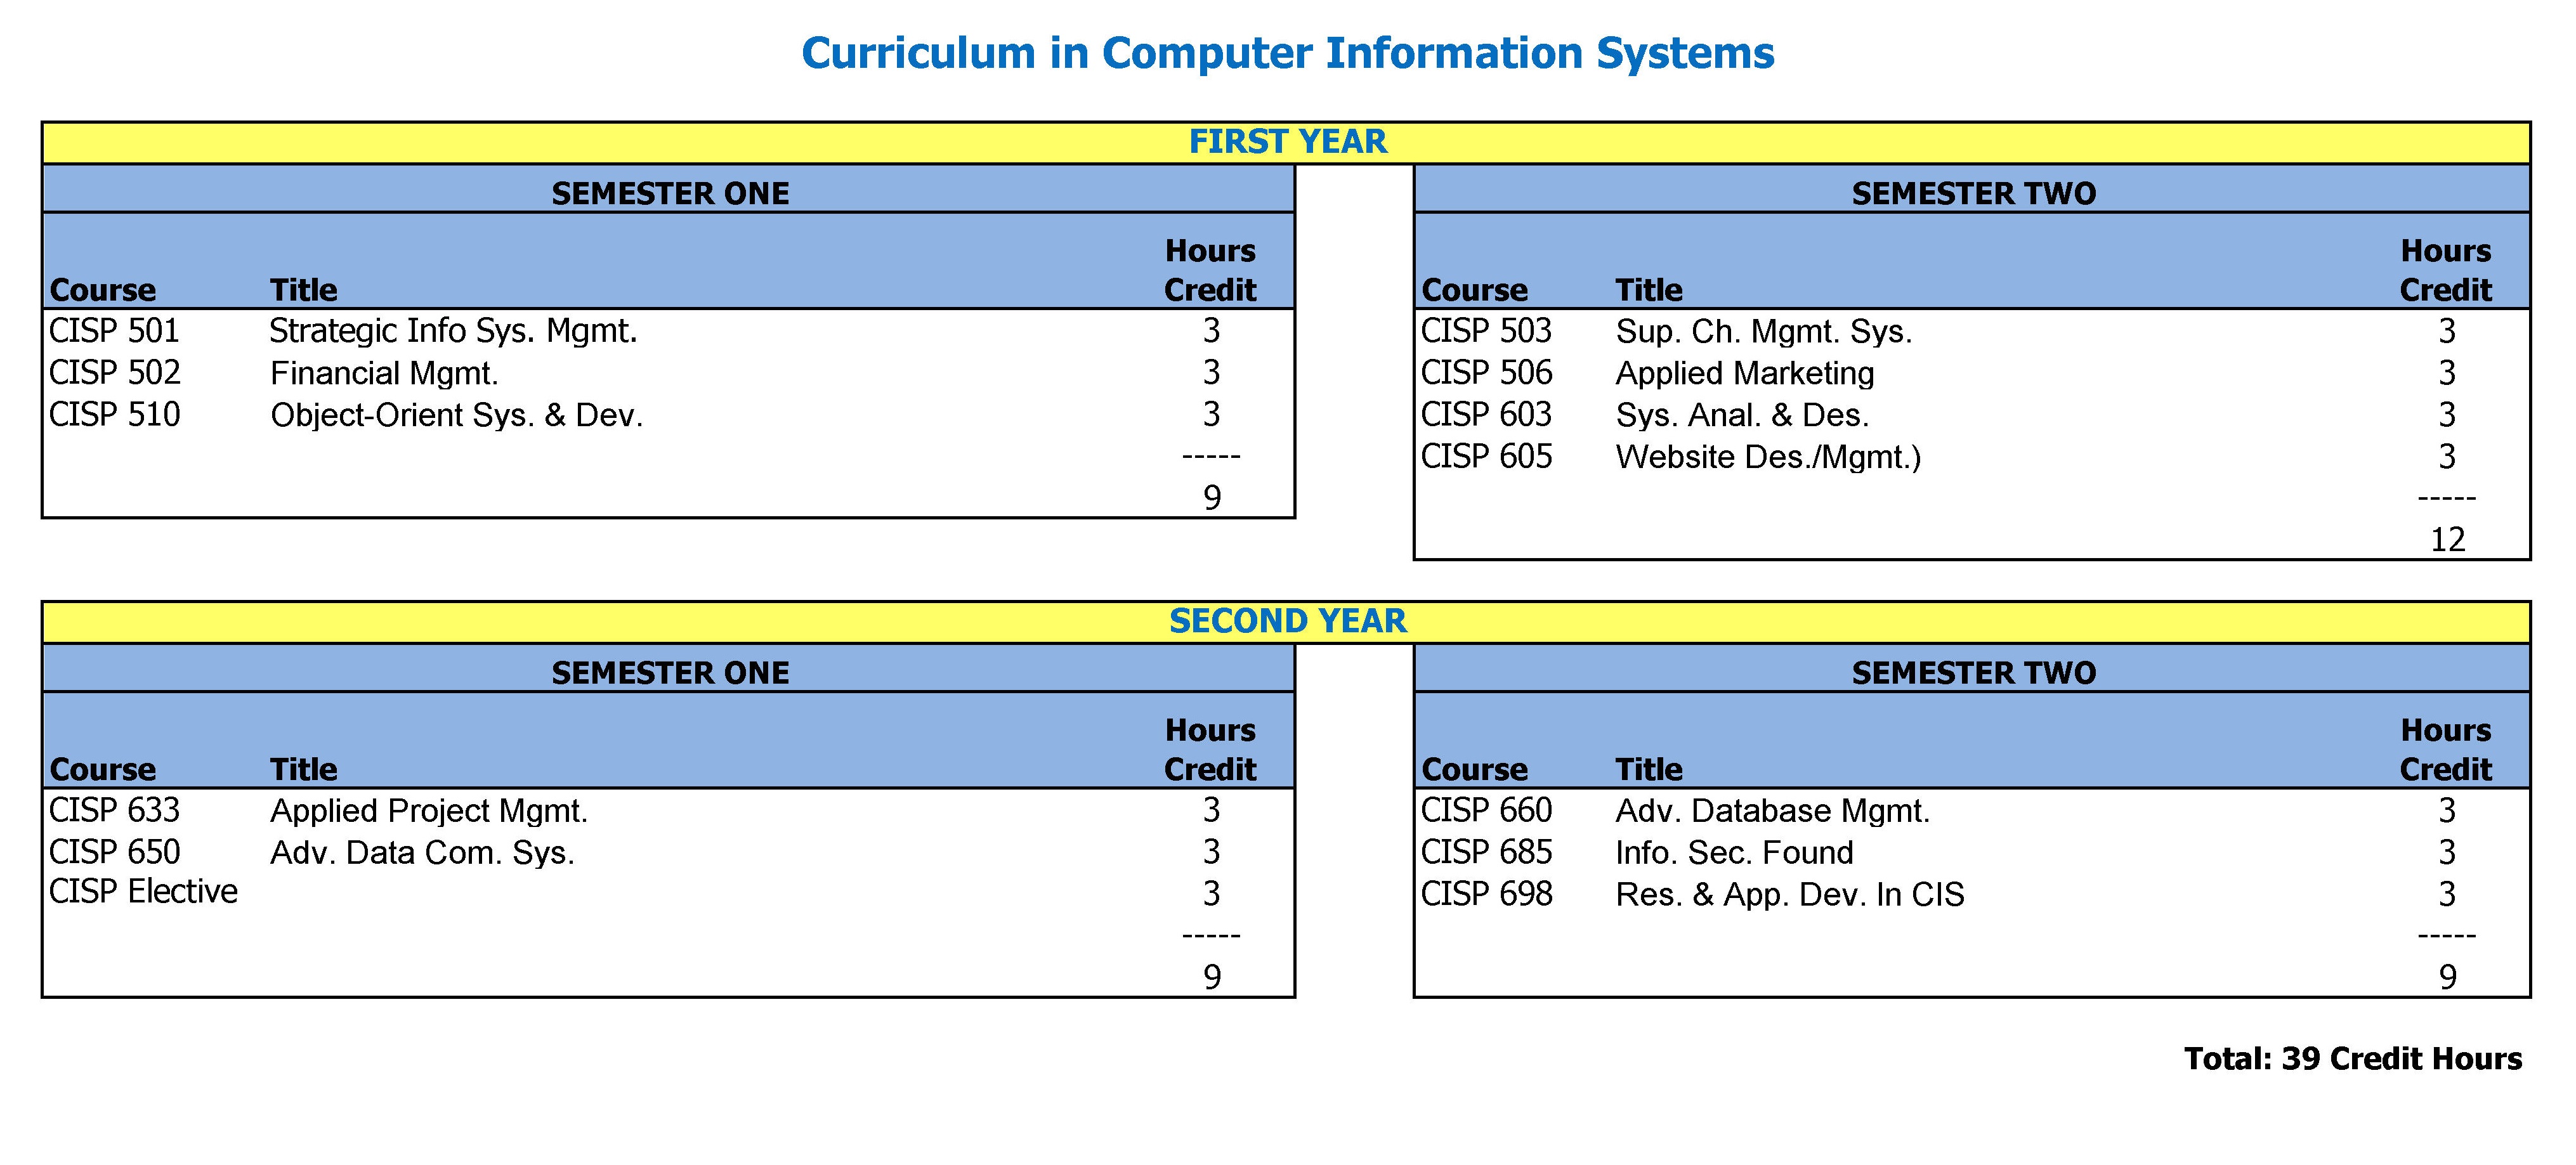 Curriculum in CIS Graduate